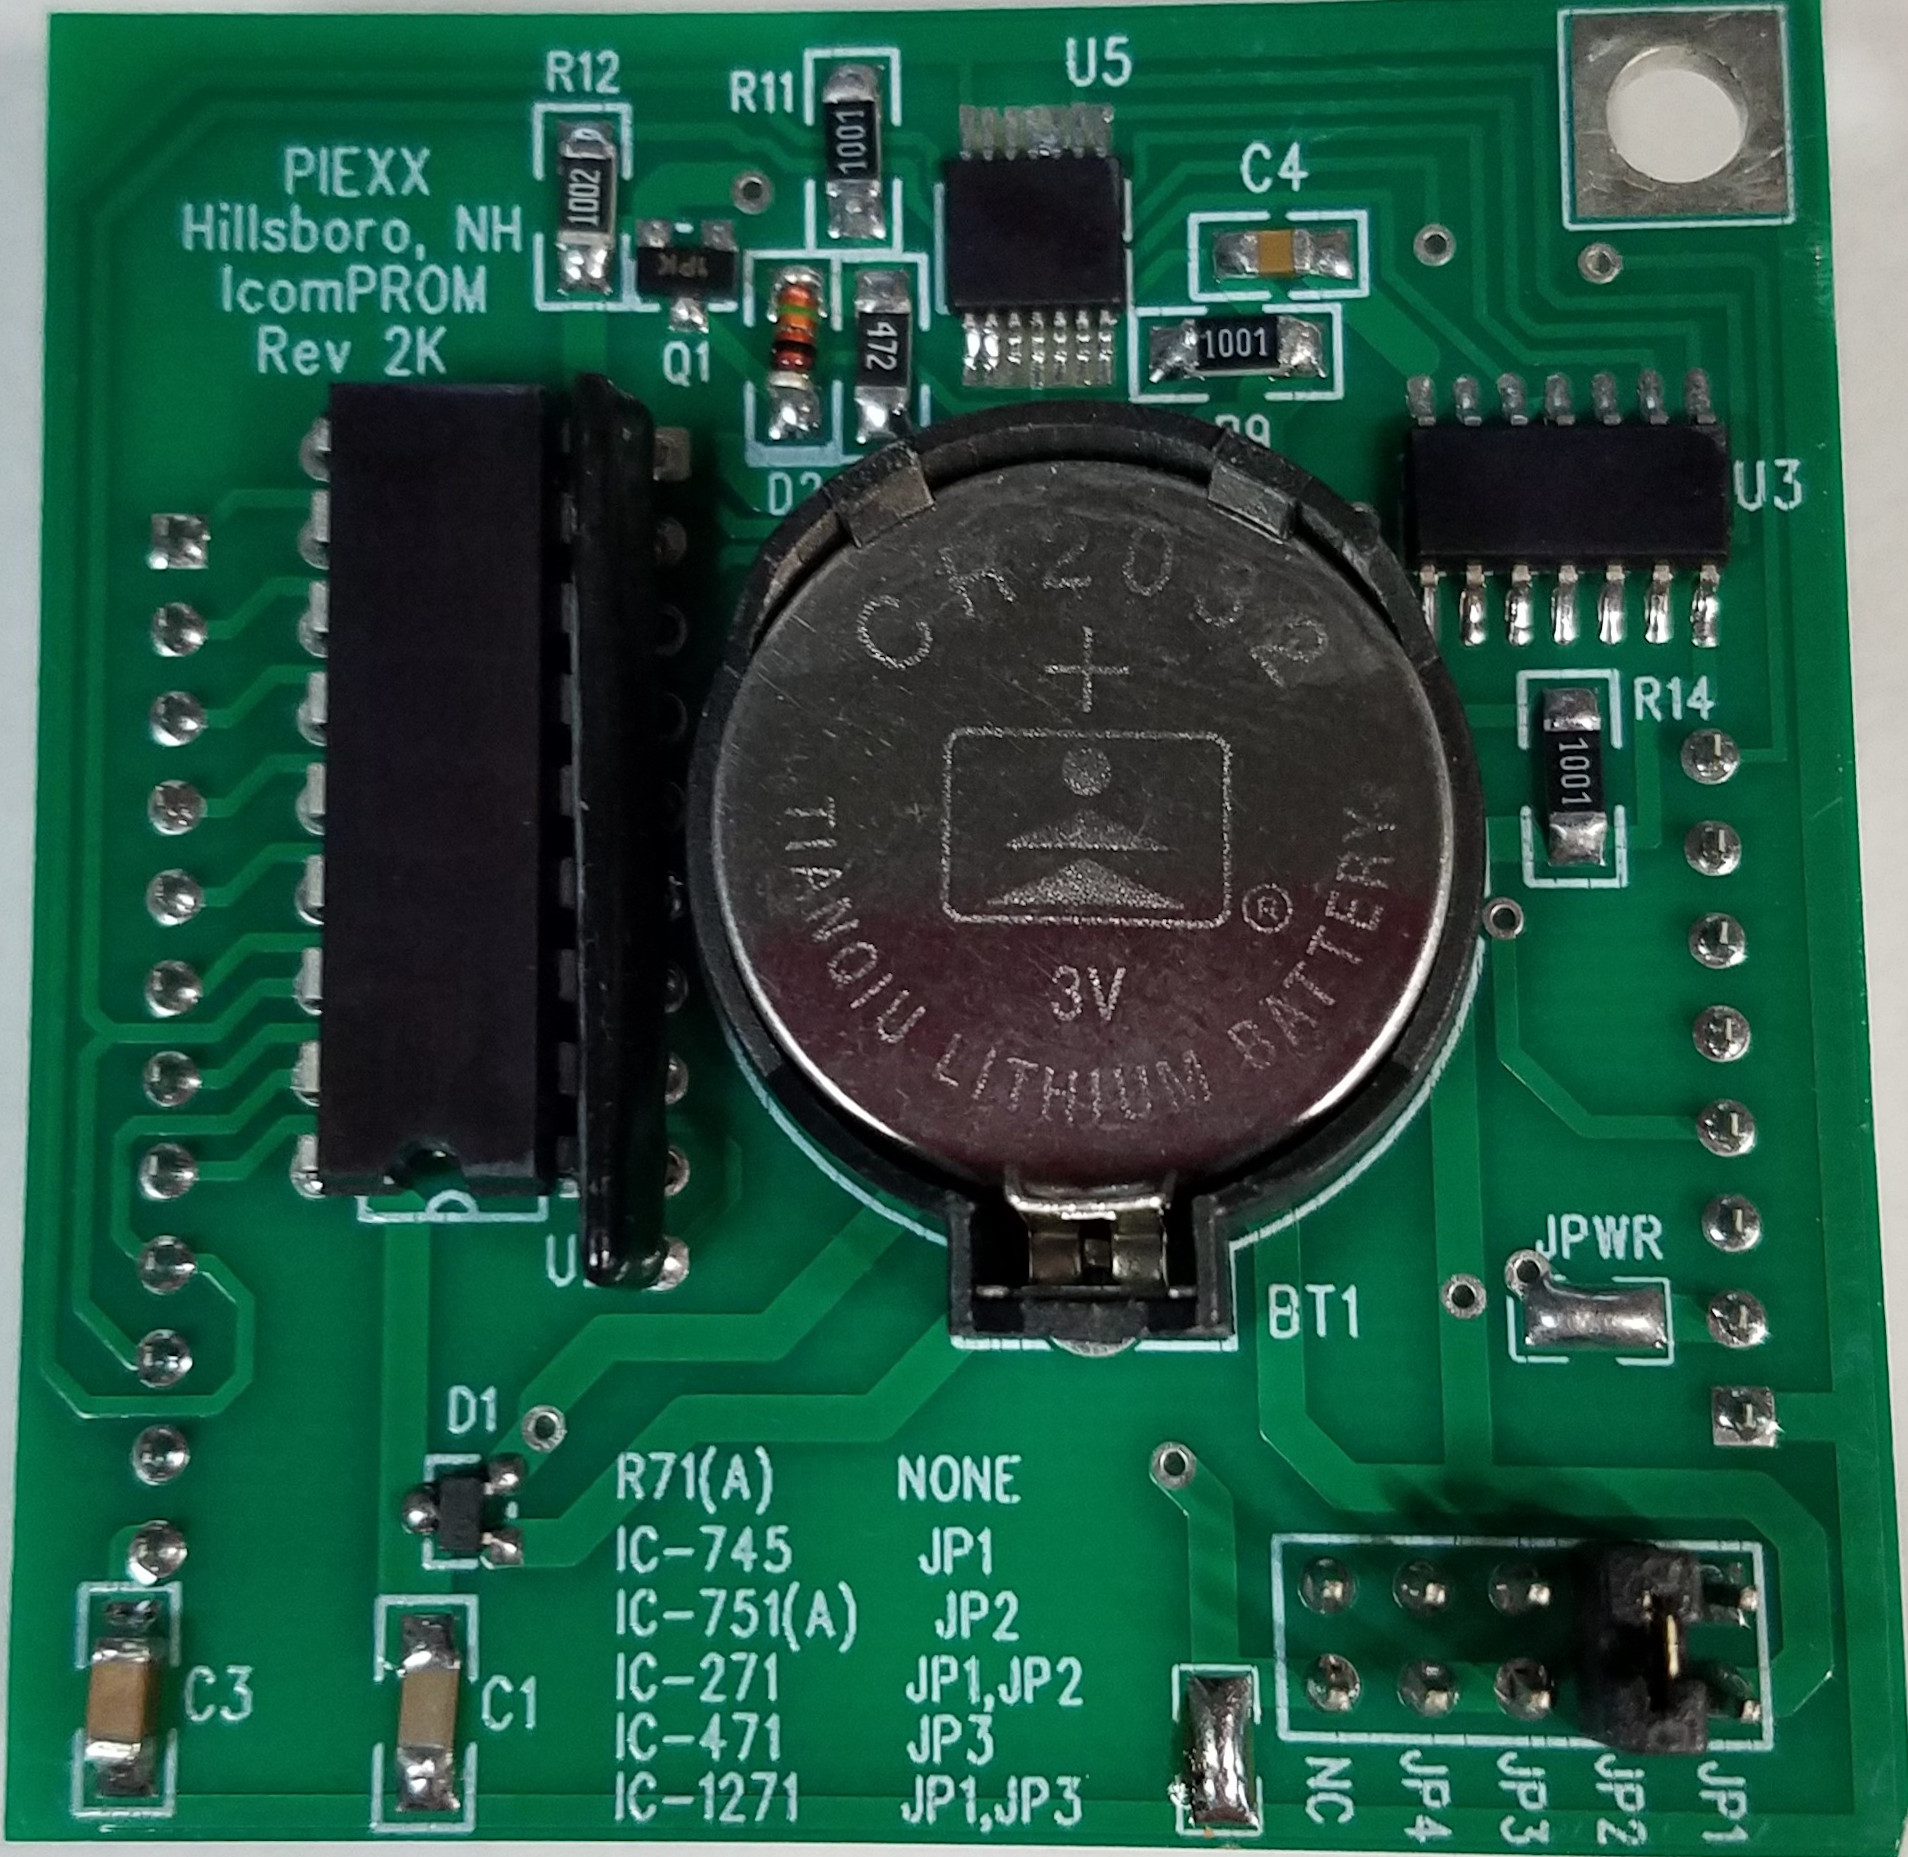 UT-50px Tone Encoder for the Icom IC-2SAT, IC-24, IC-229 ect. [UT 